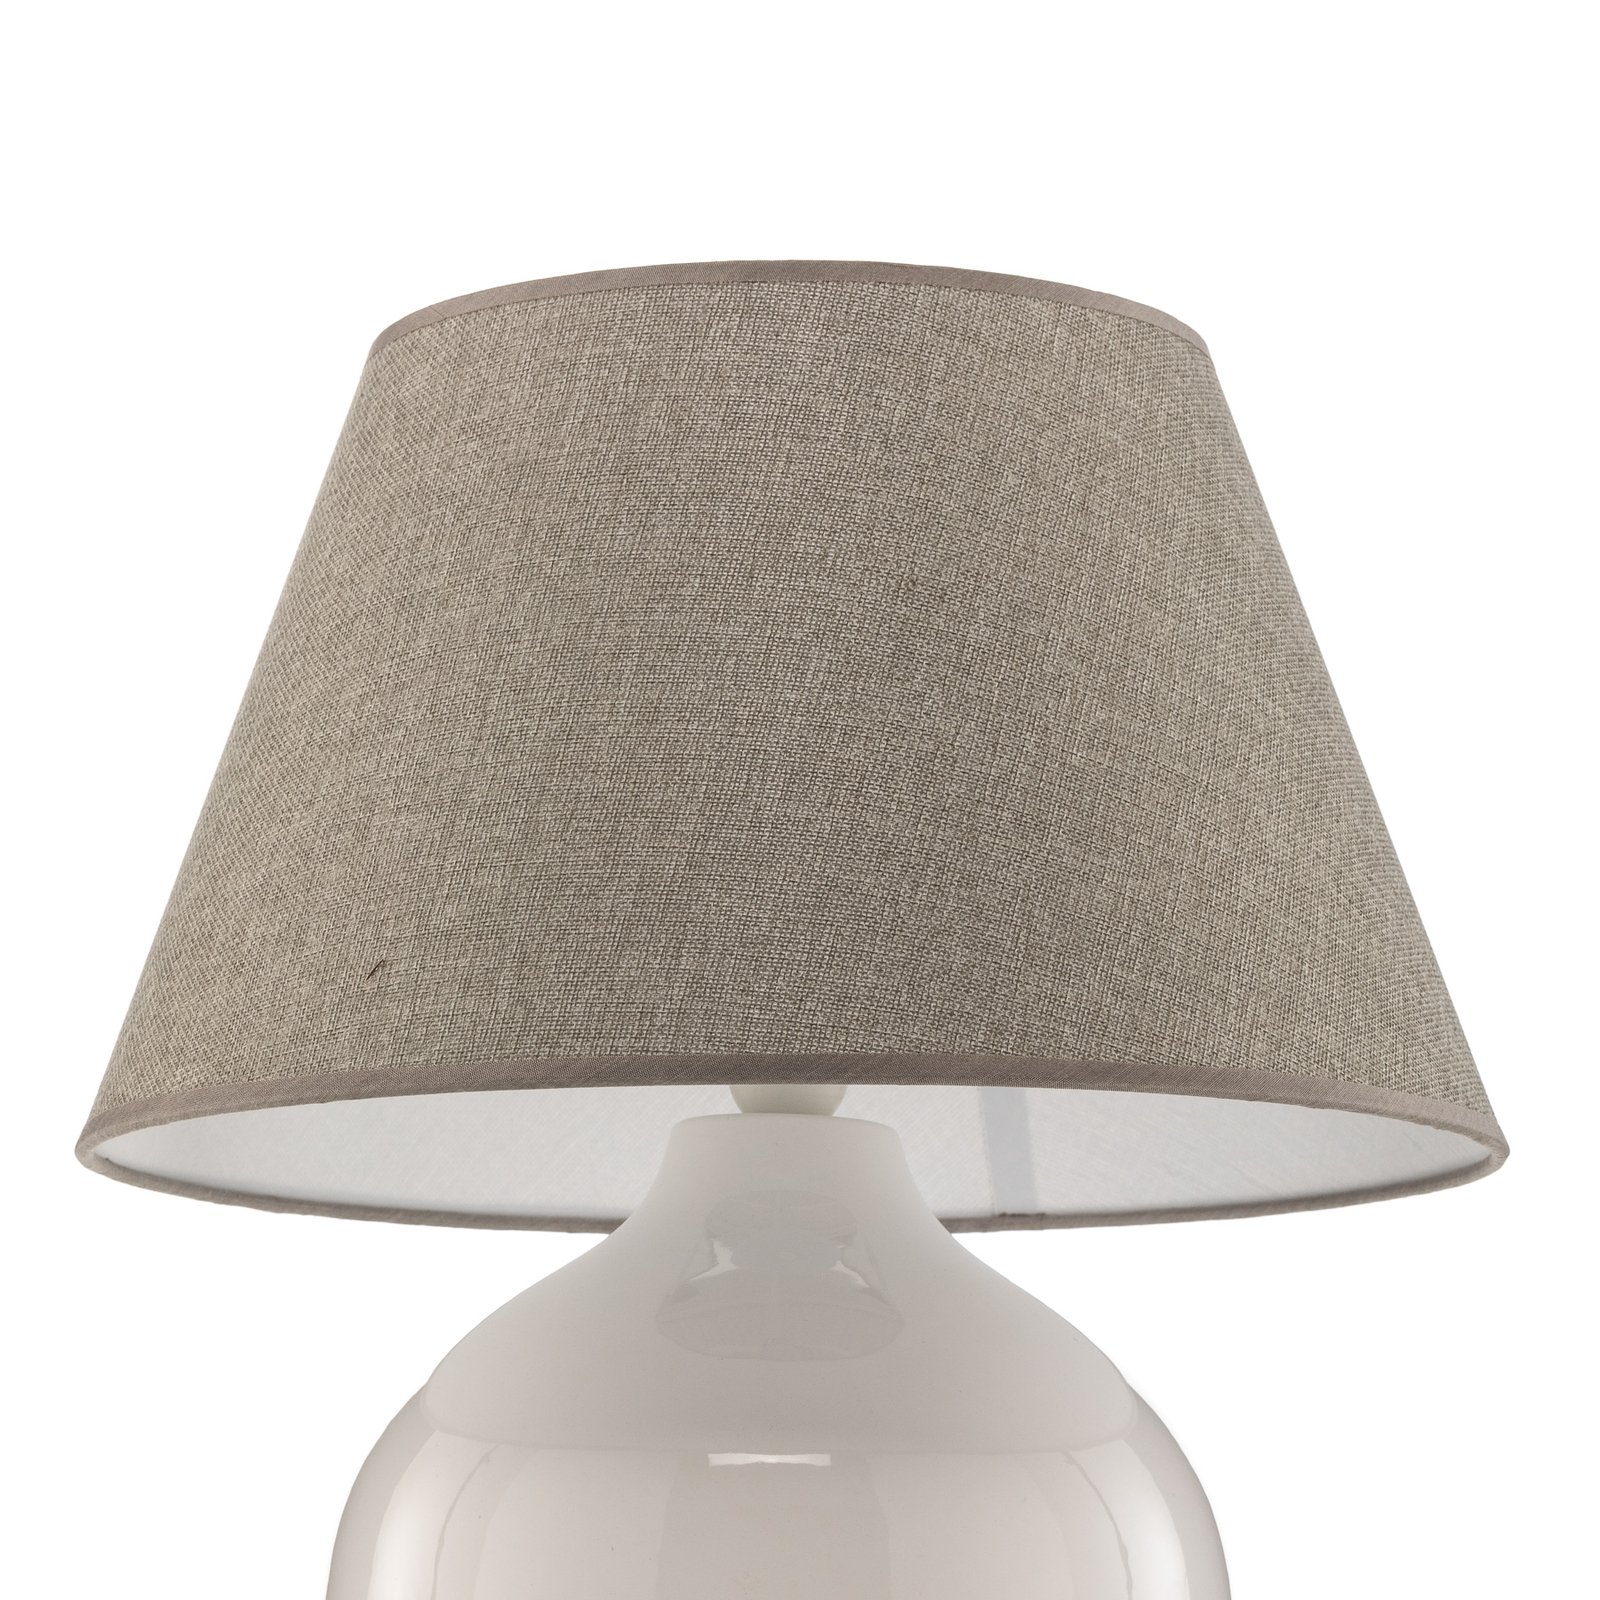 Bordlampe Sfera, 53 cm høyde, hvit/grå